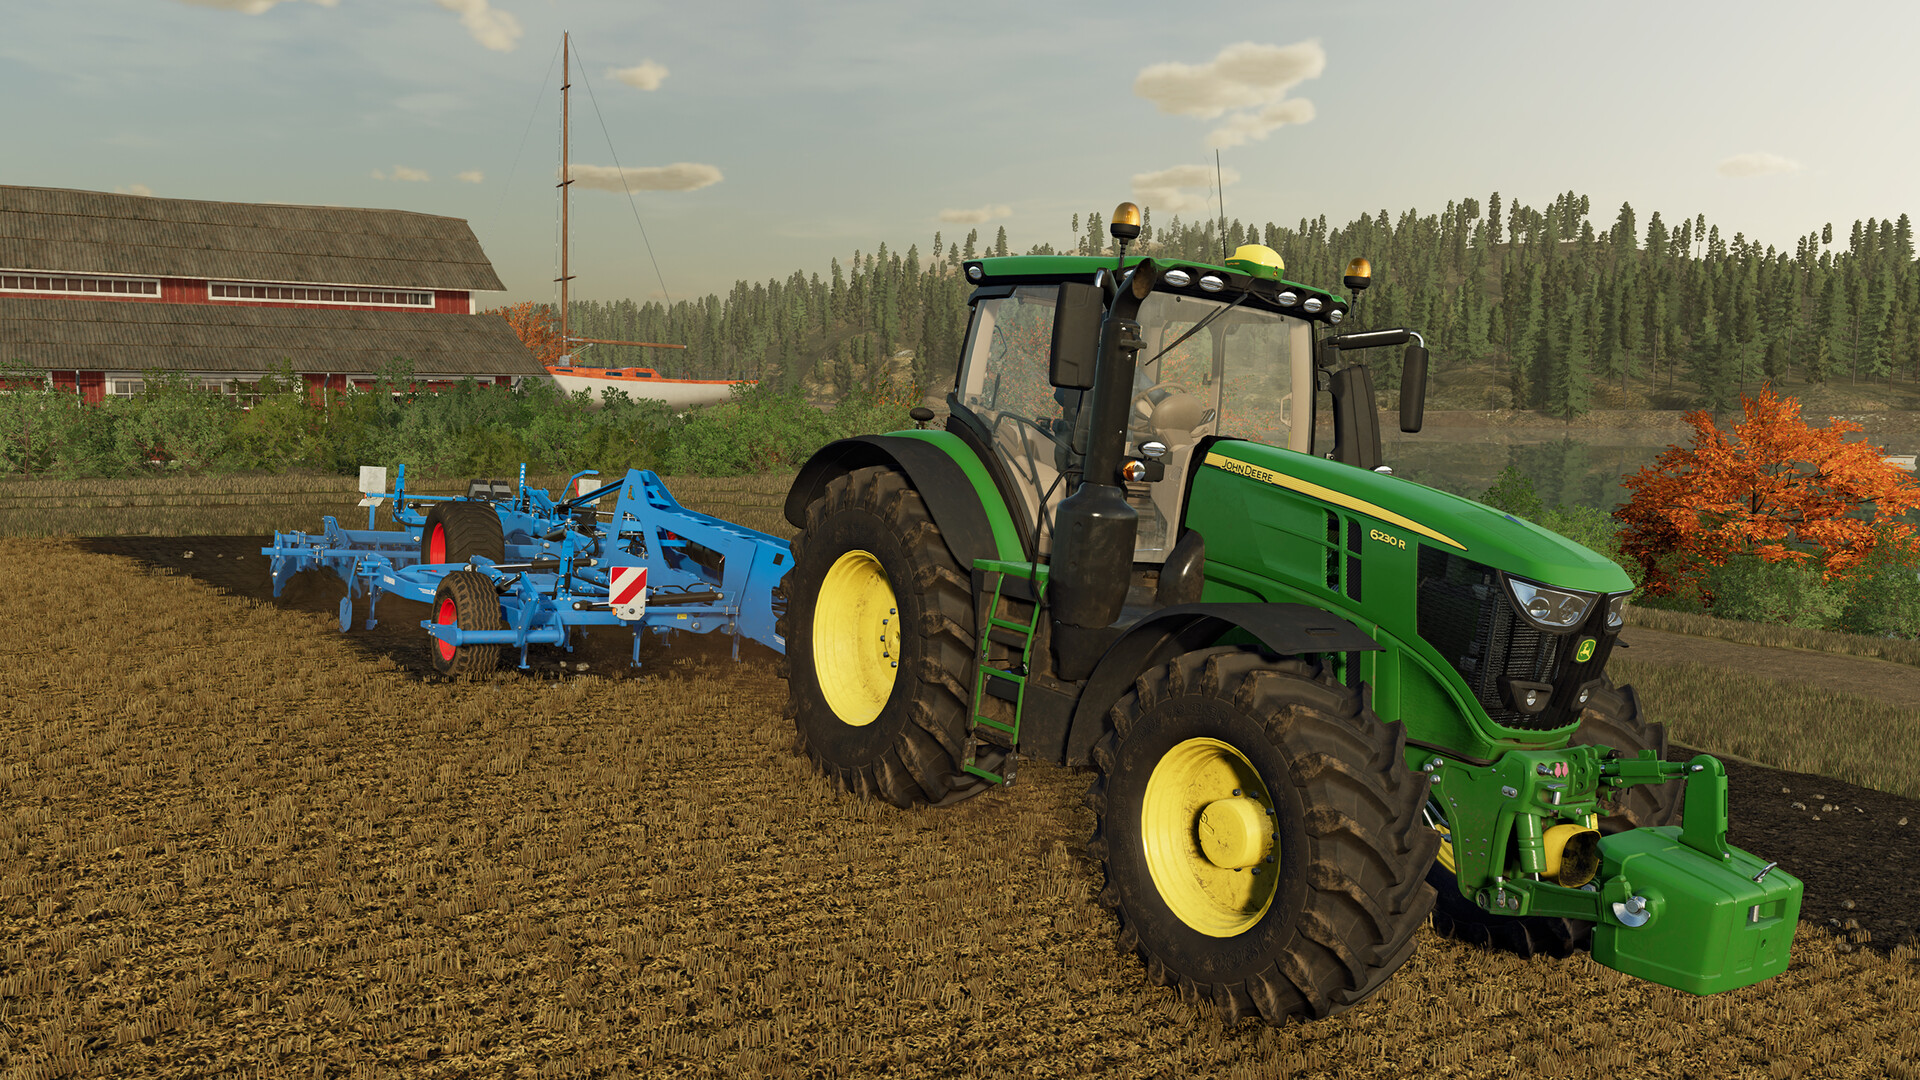 Detalhes da expansão Platinum Edition de Farming Simulator 22